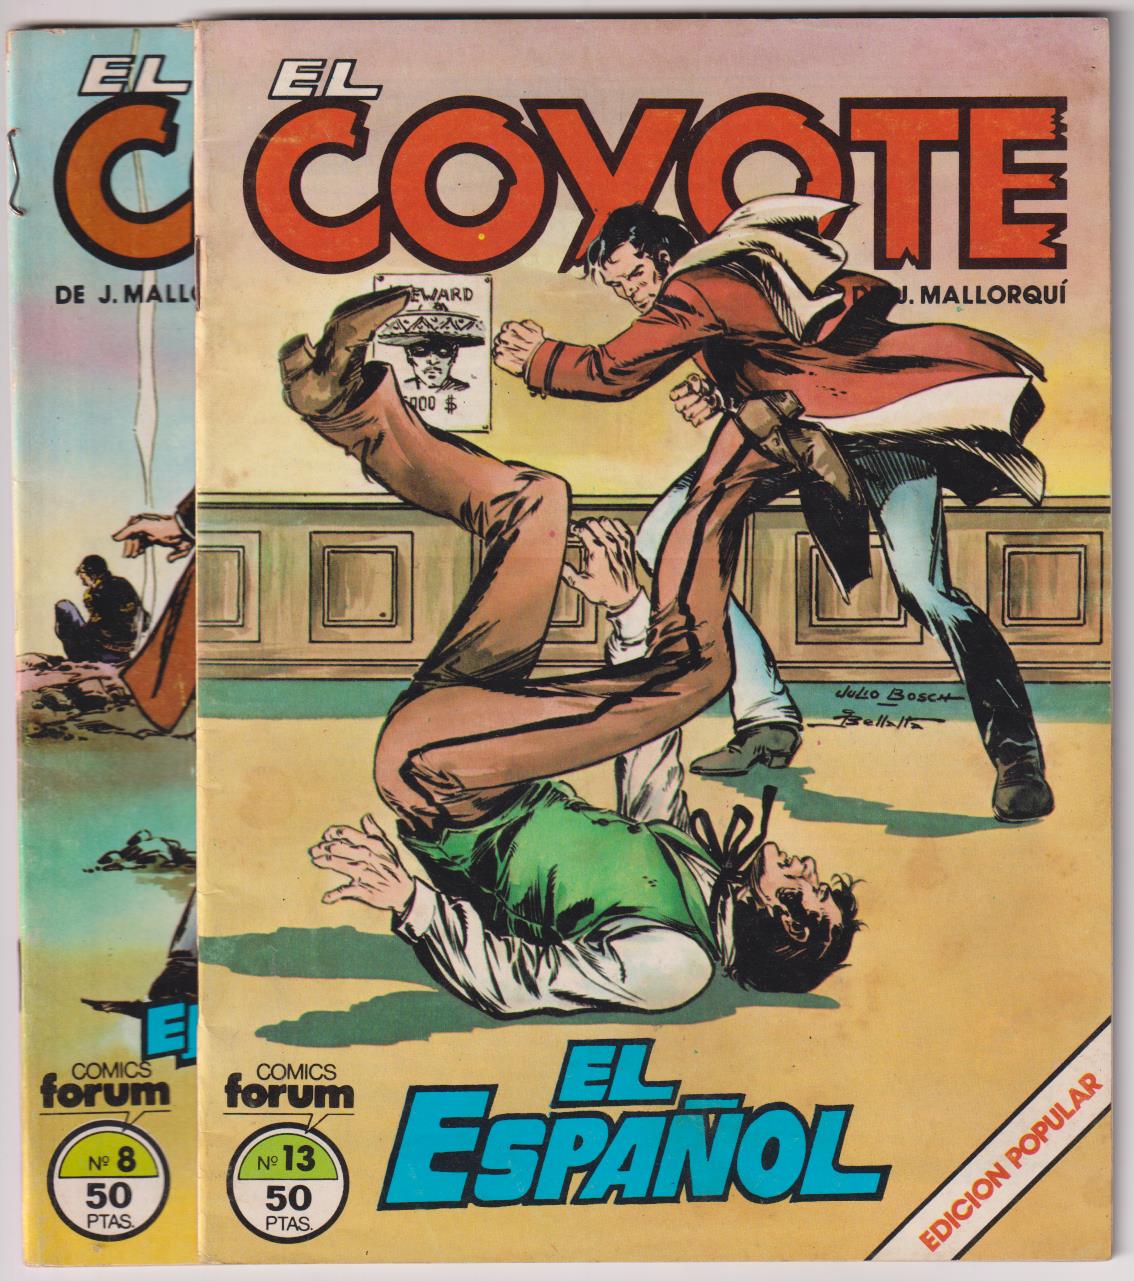 El Coyote. Lote de 2 ejemplares nº 8 y 13. Forum